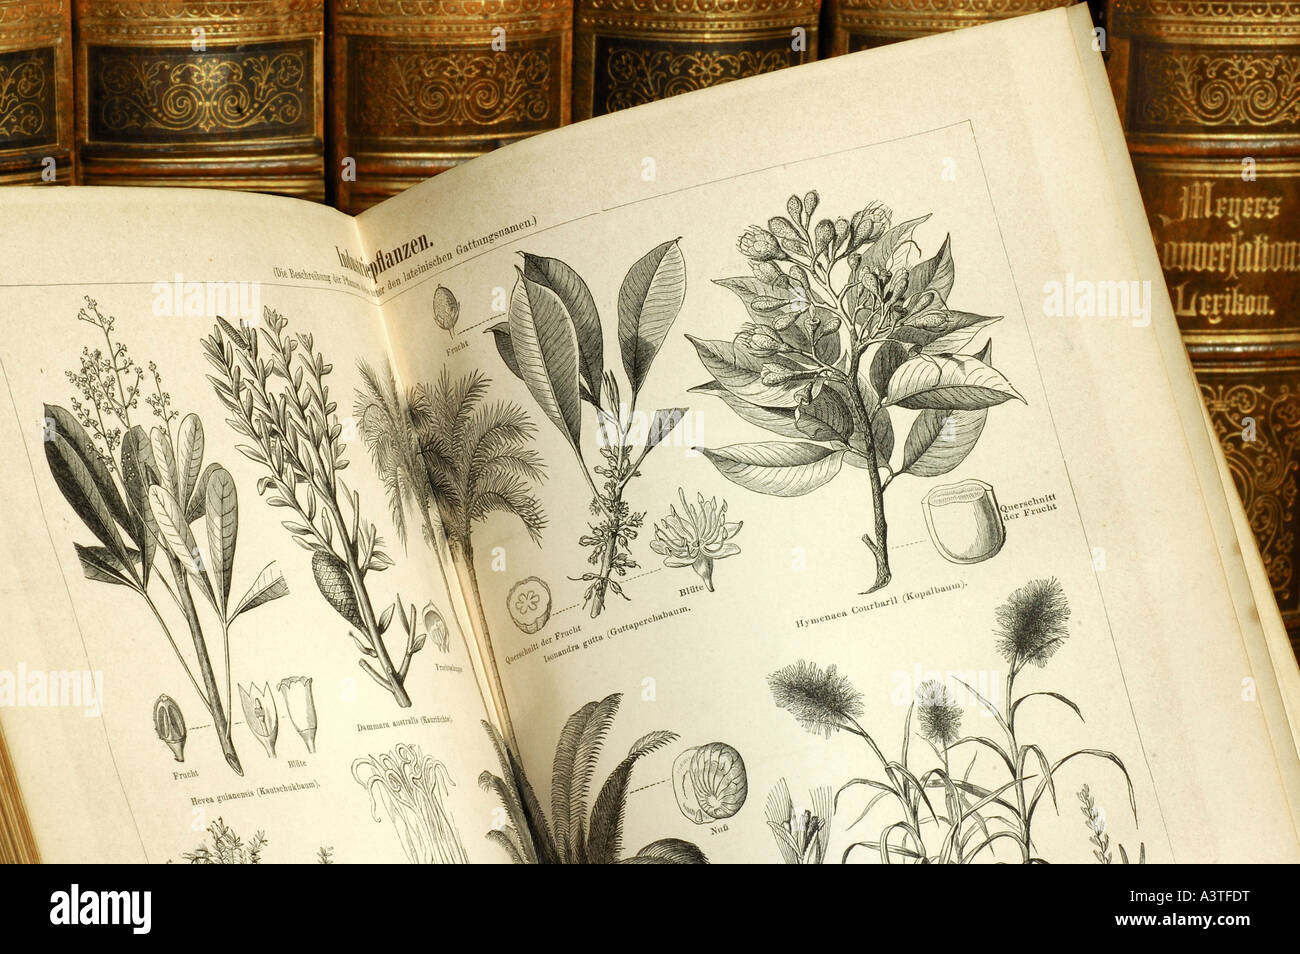 Ilustraciones de plantas útiles en un volumen de una vieja edición de Meyers lexicon Foto de stock